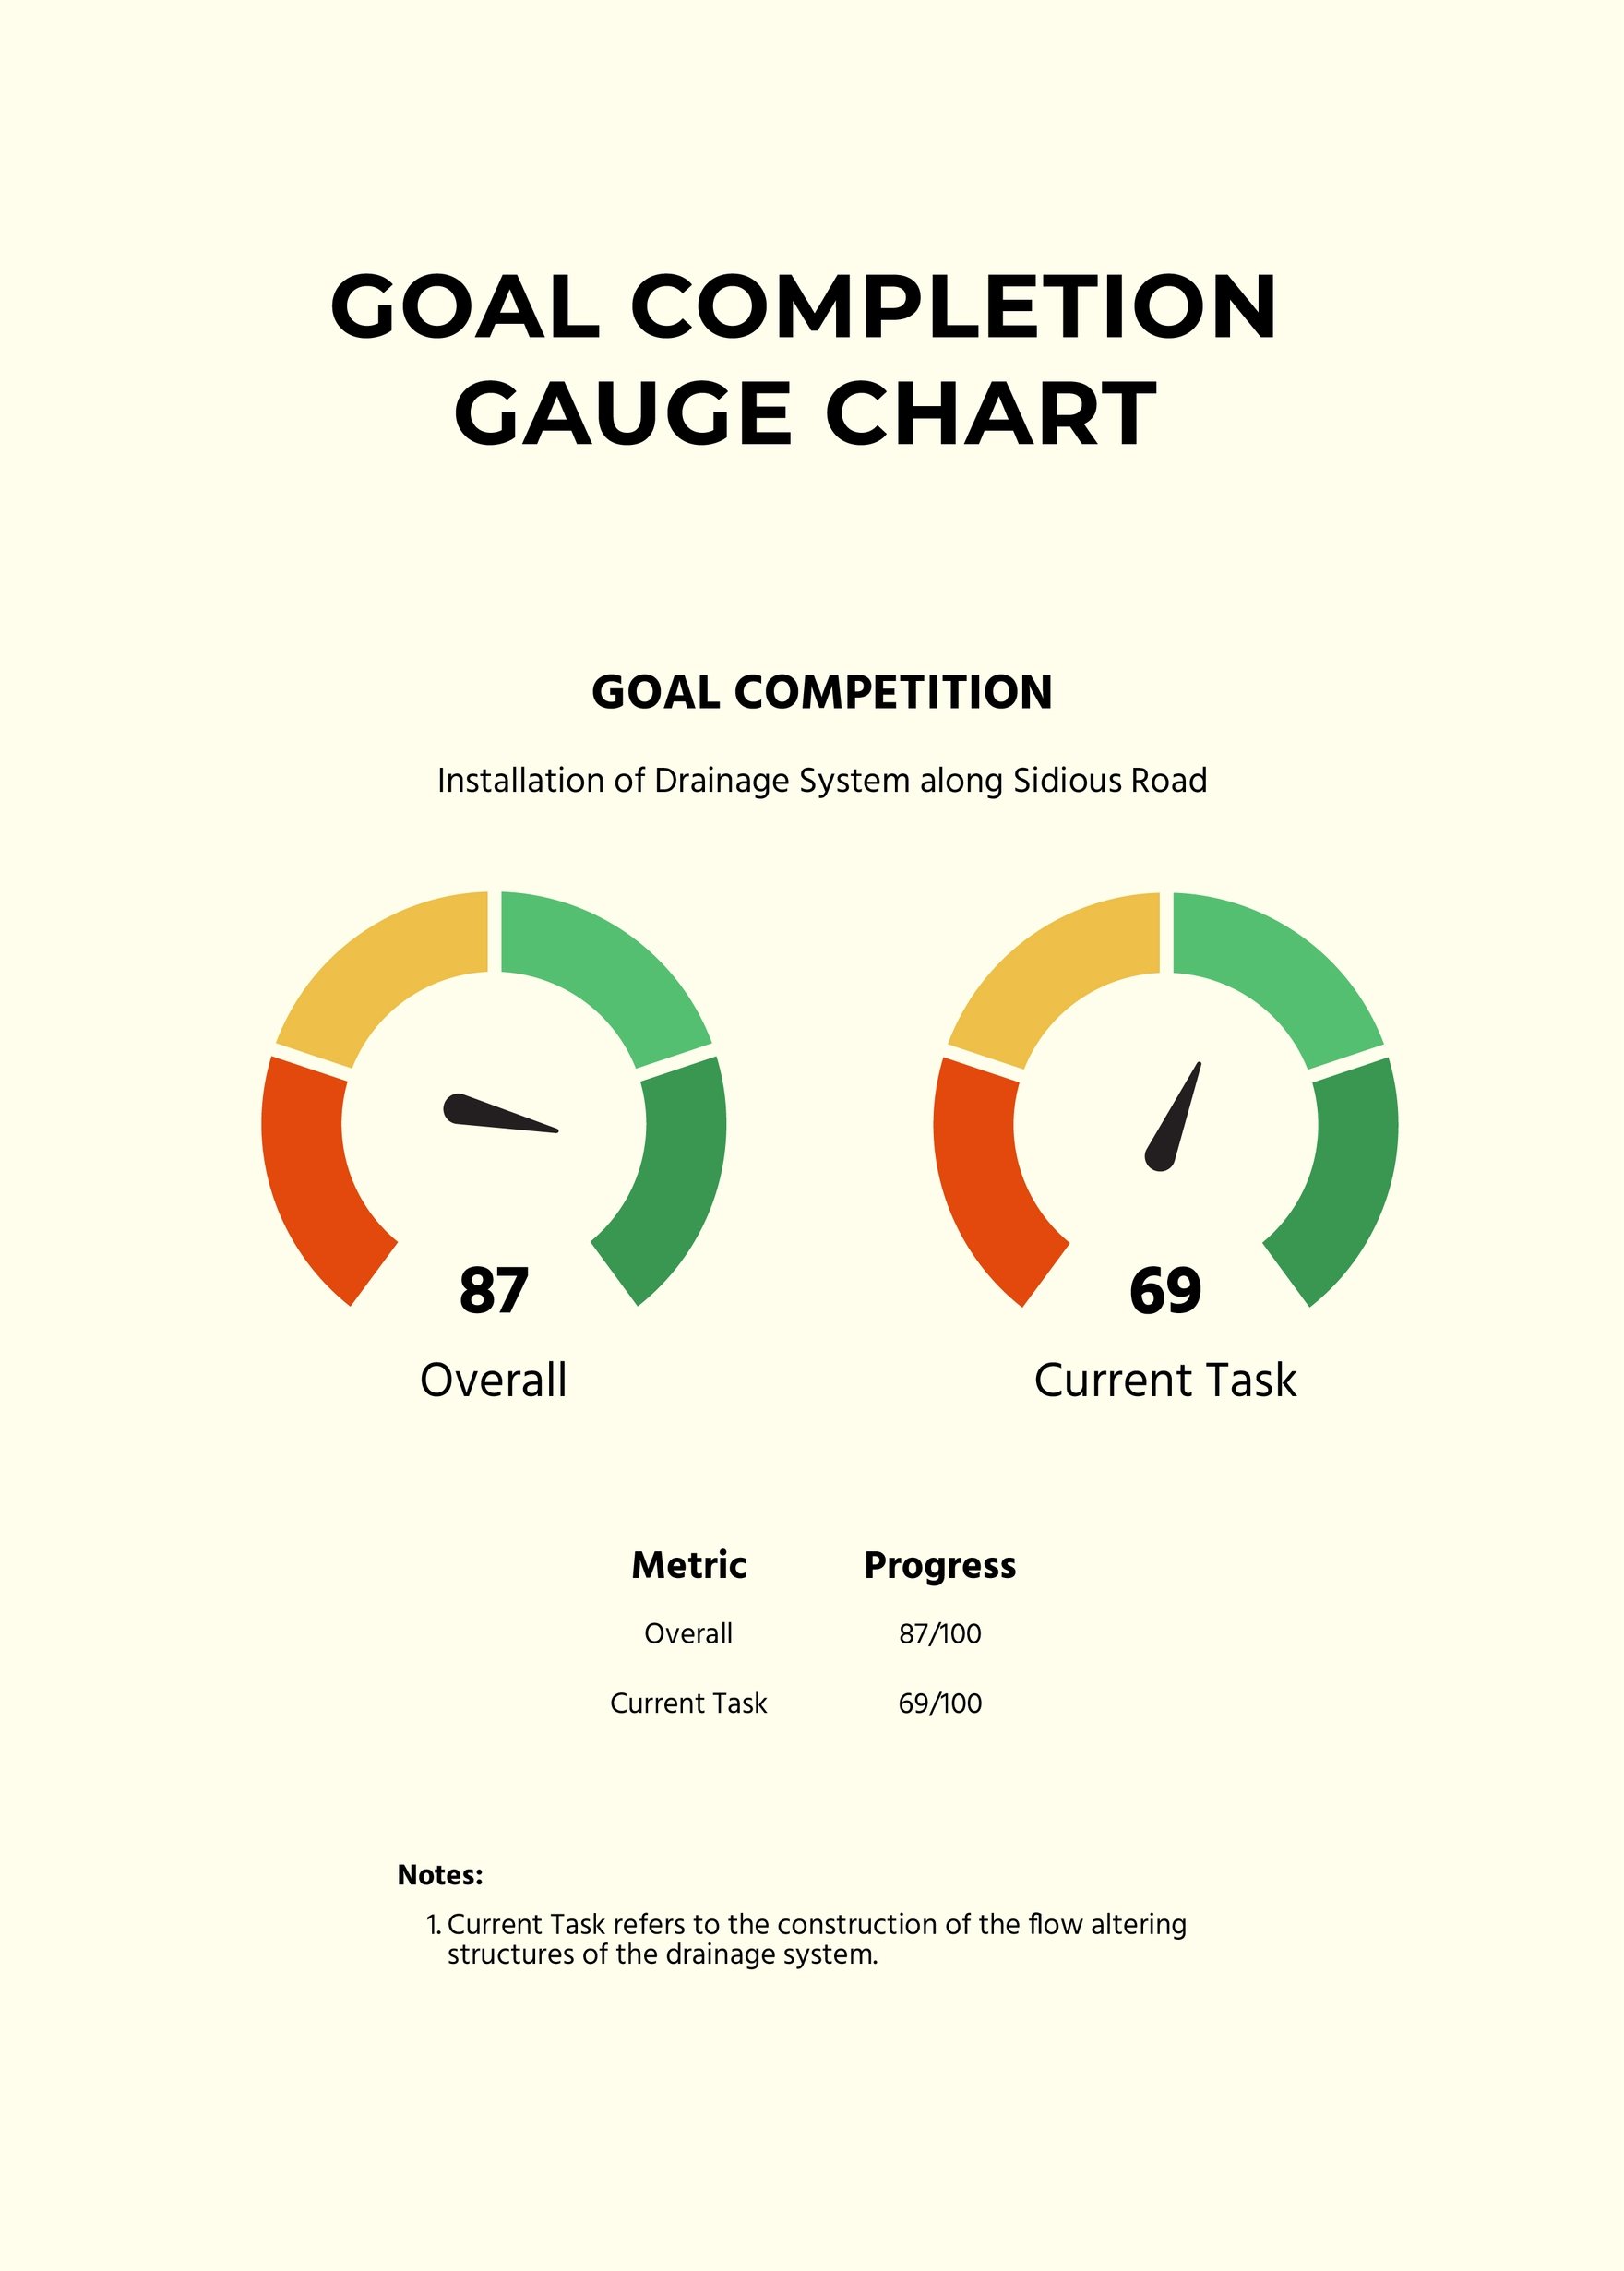 Goal Completion Gauge Chart in PDF, Illustrator